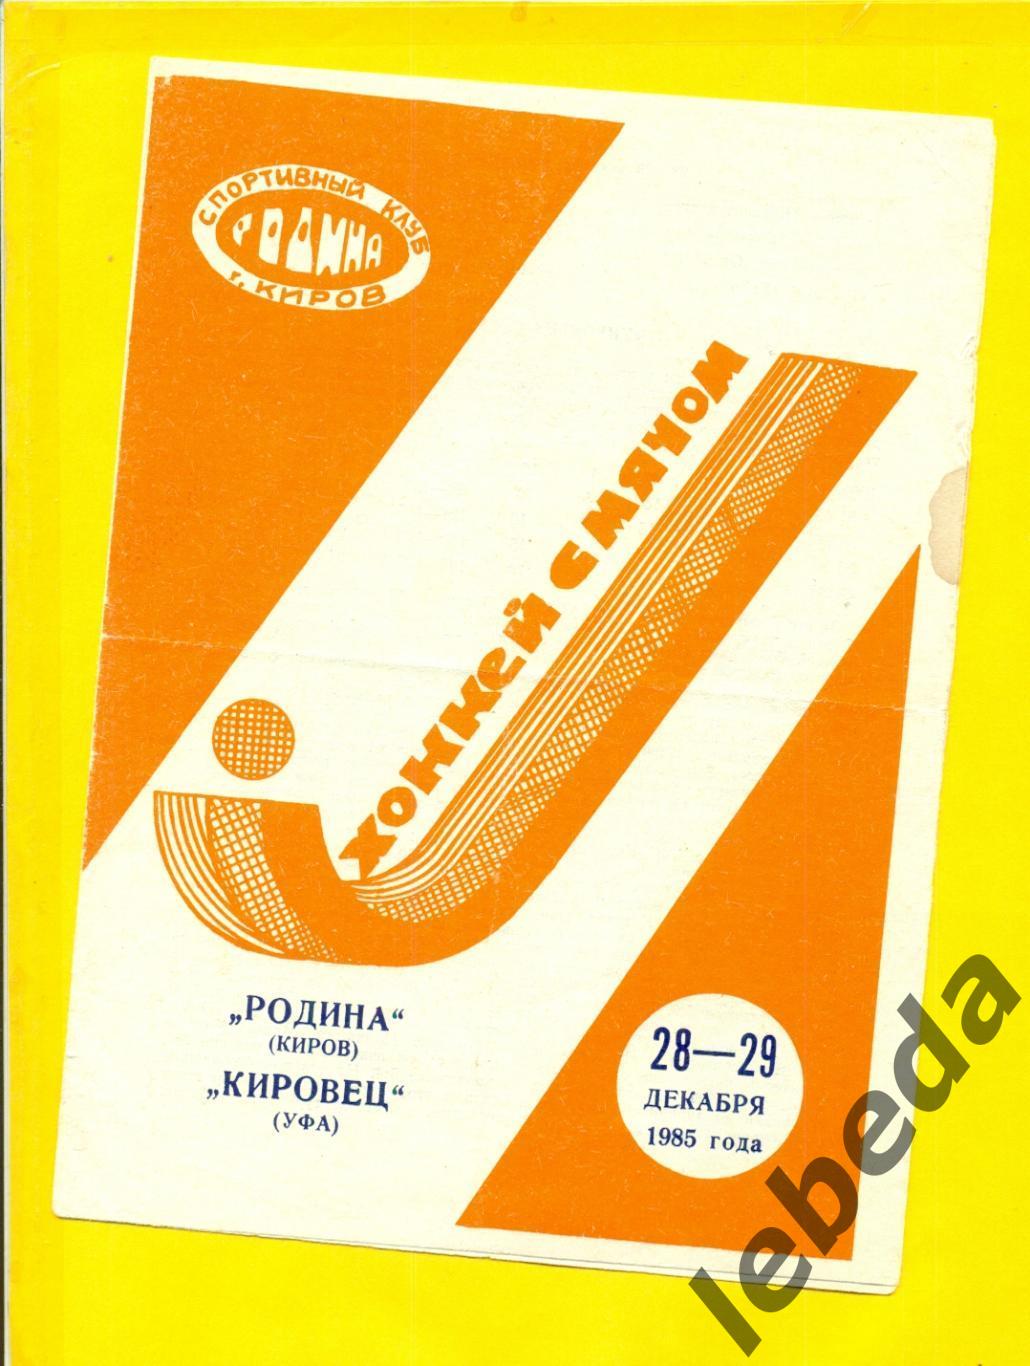 Родина Киров - Кировец Уфа - 1985 г. (28-29.12.85.)